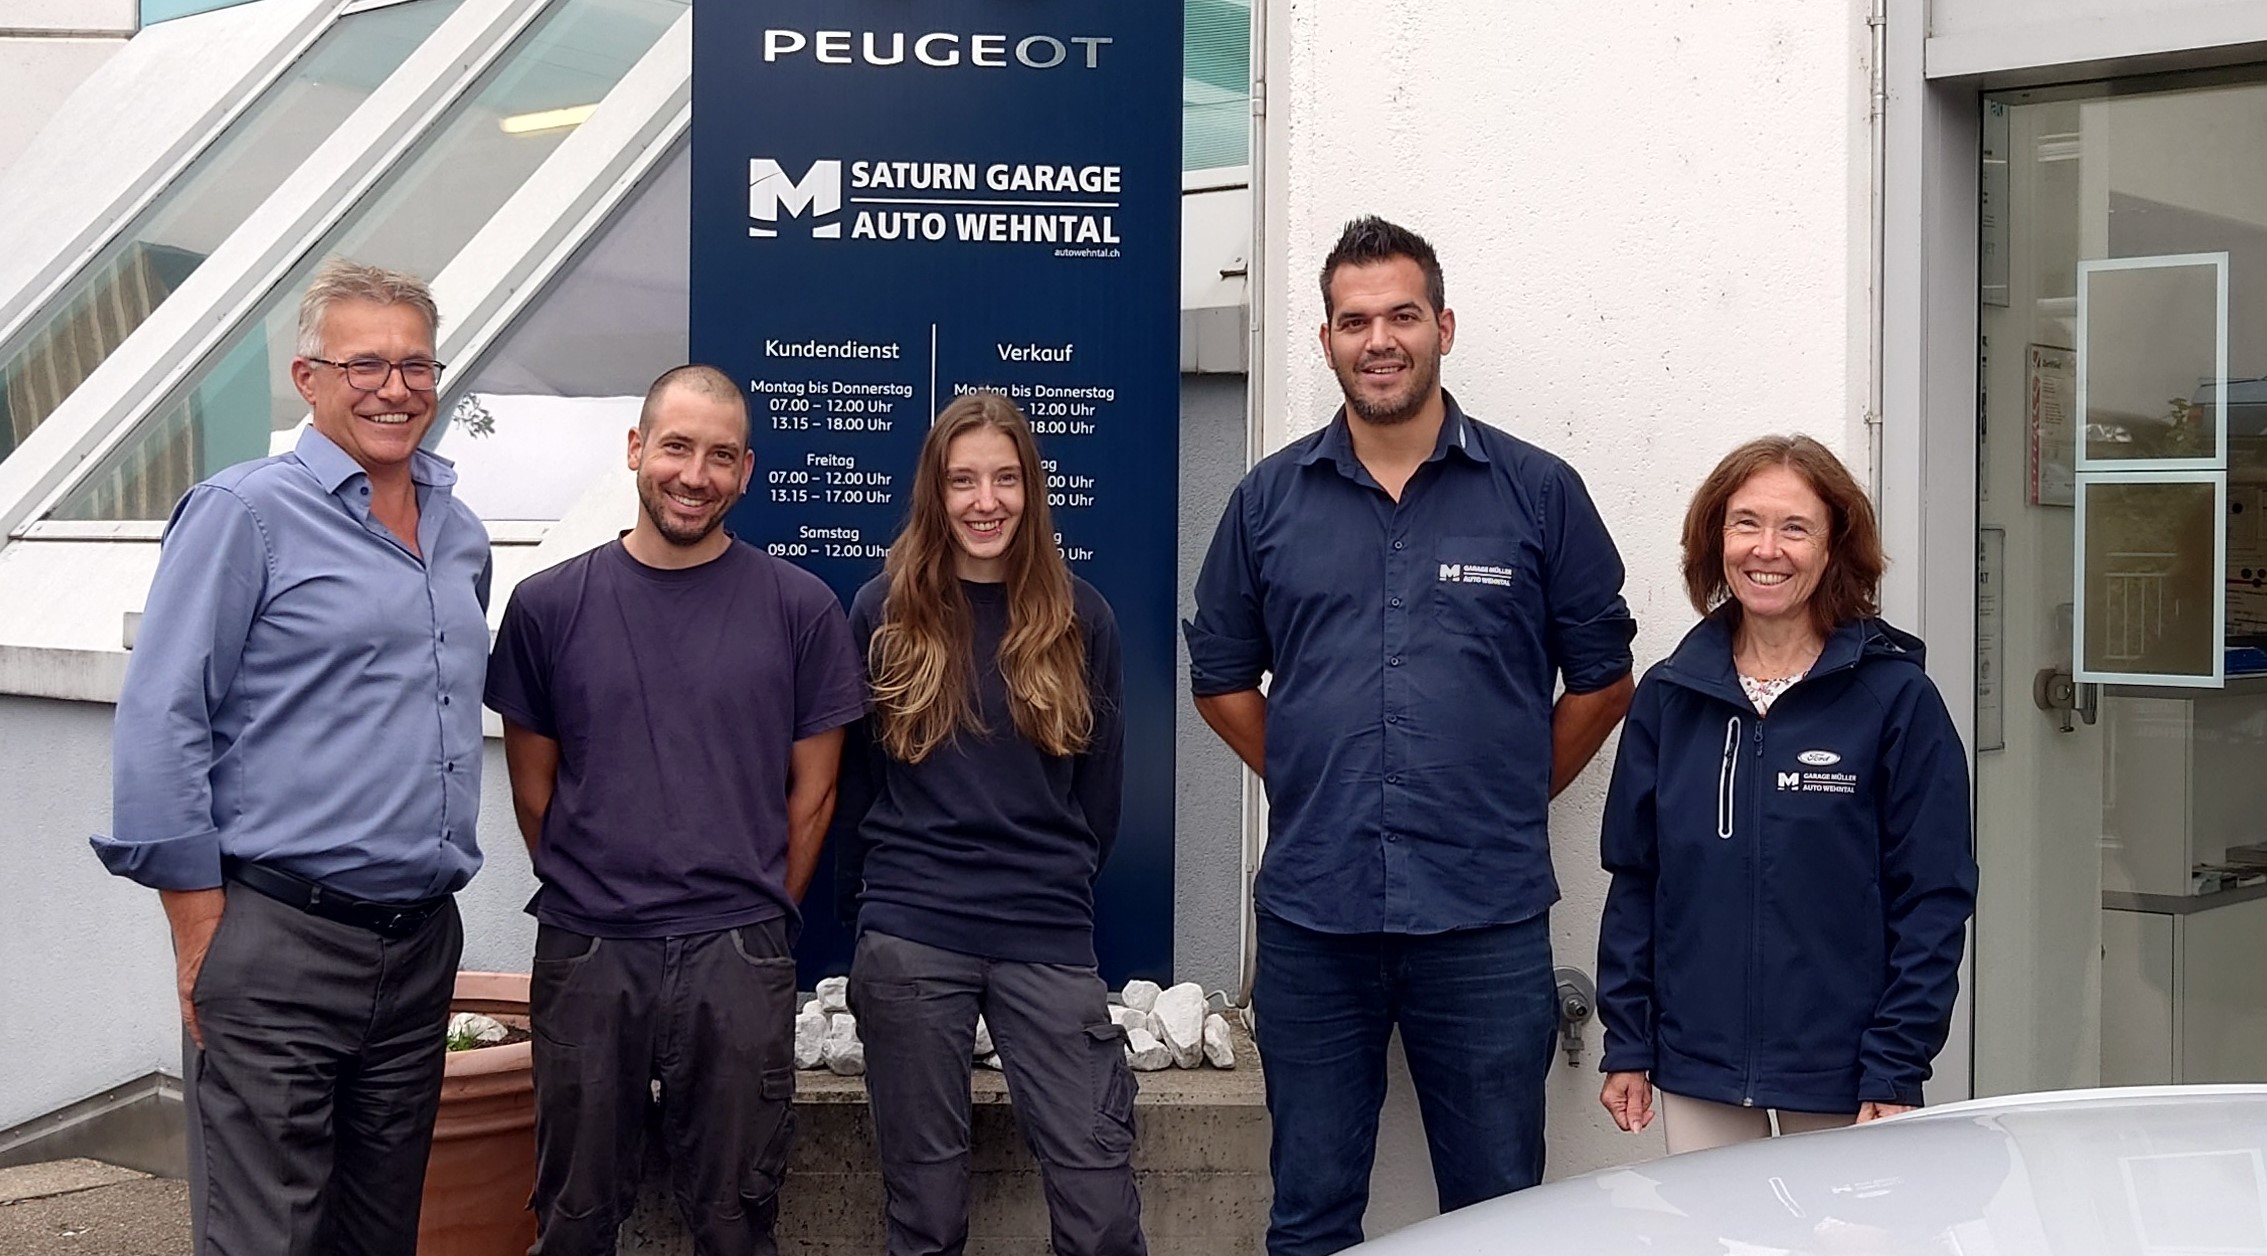 Unser Saturn Team mit Peugeot